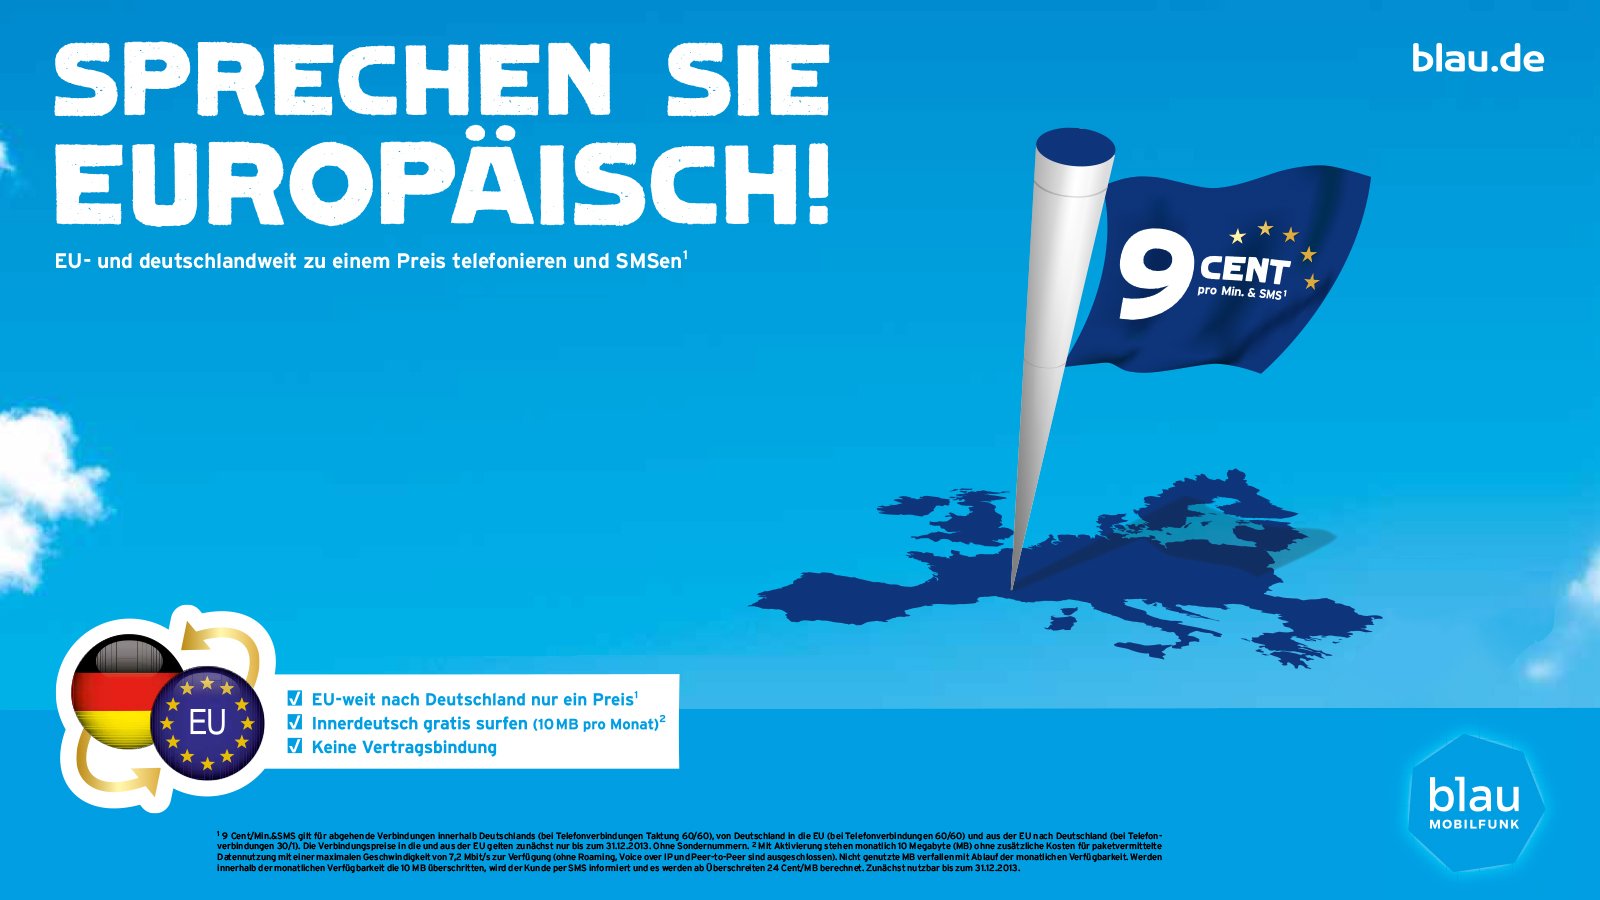 Webtipp – 9 Cent Prepaid-Tarif: blau.de schafft für Wintersportler die Roaming-Gebühren im EU-Ausland ab